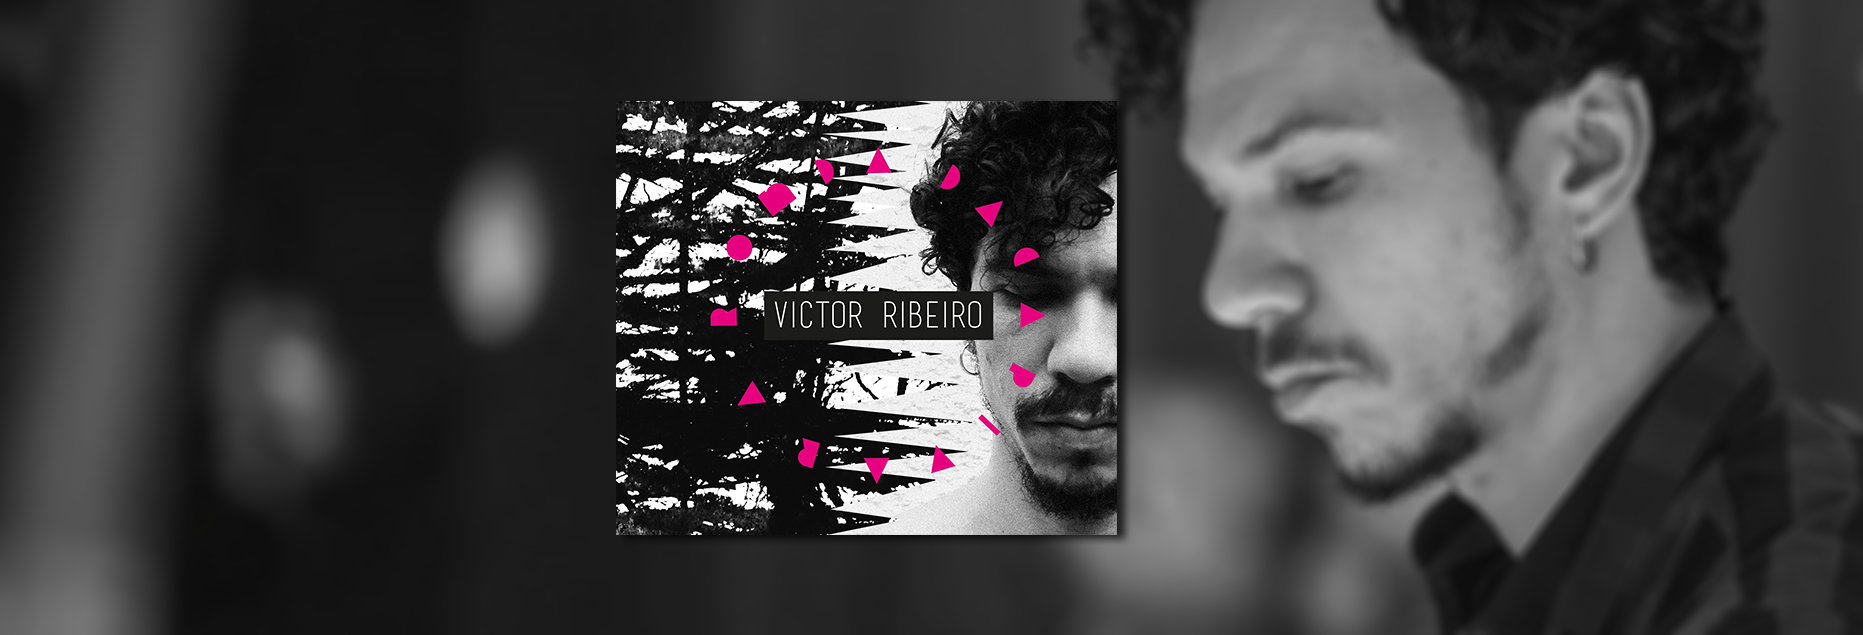 Victor Ribeiro explora limites da música brasileira em álbum solo